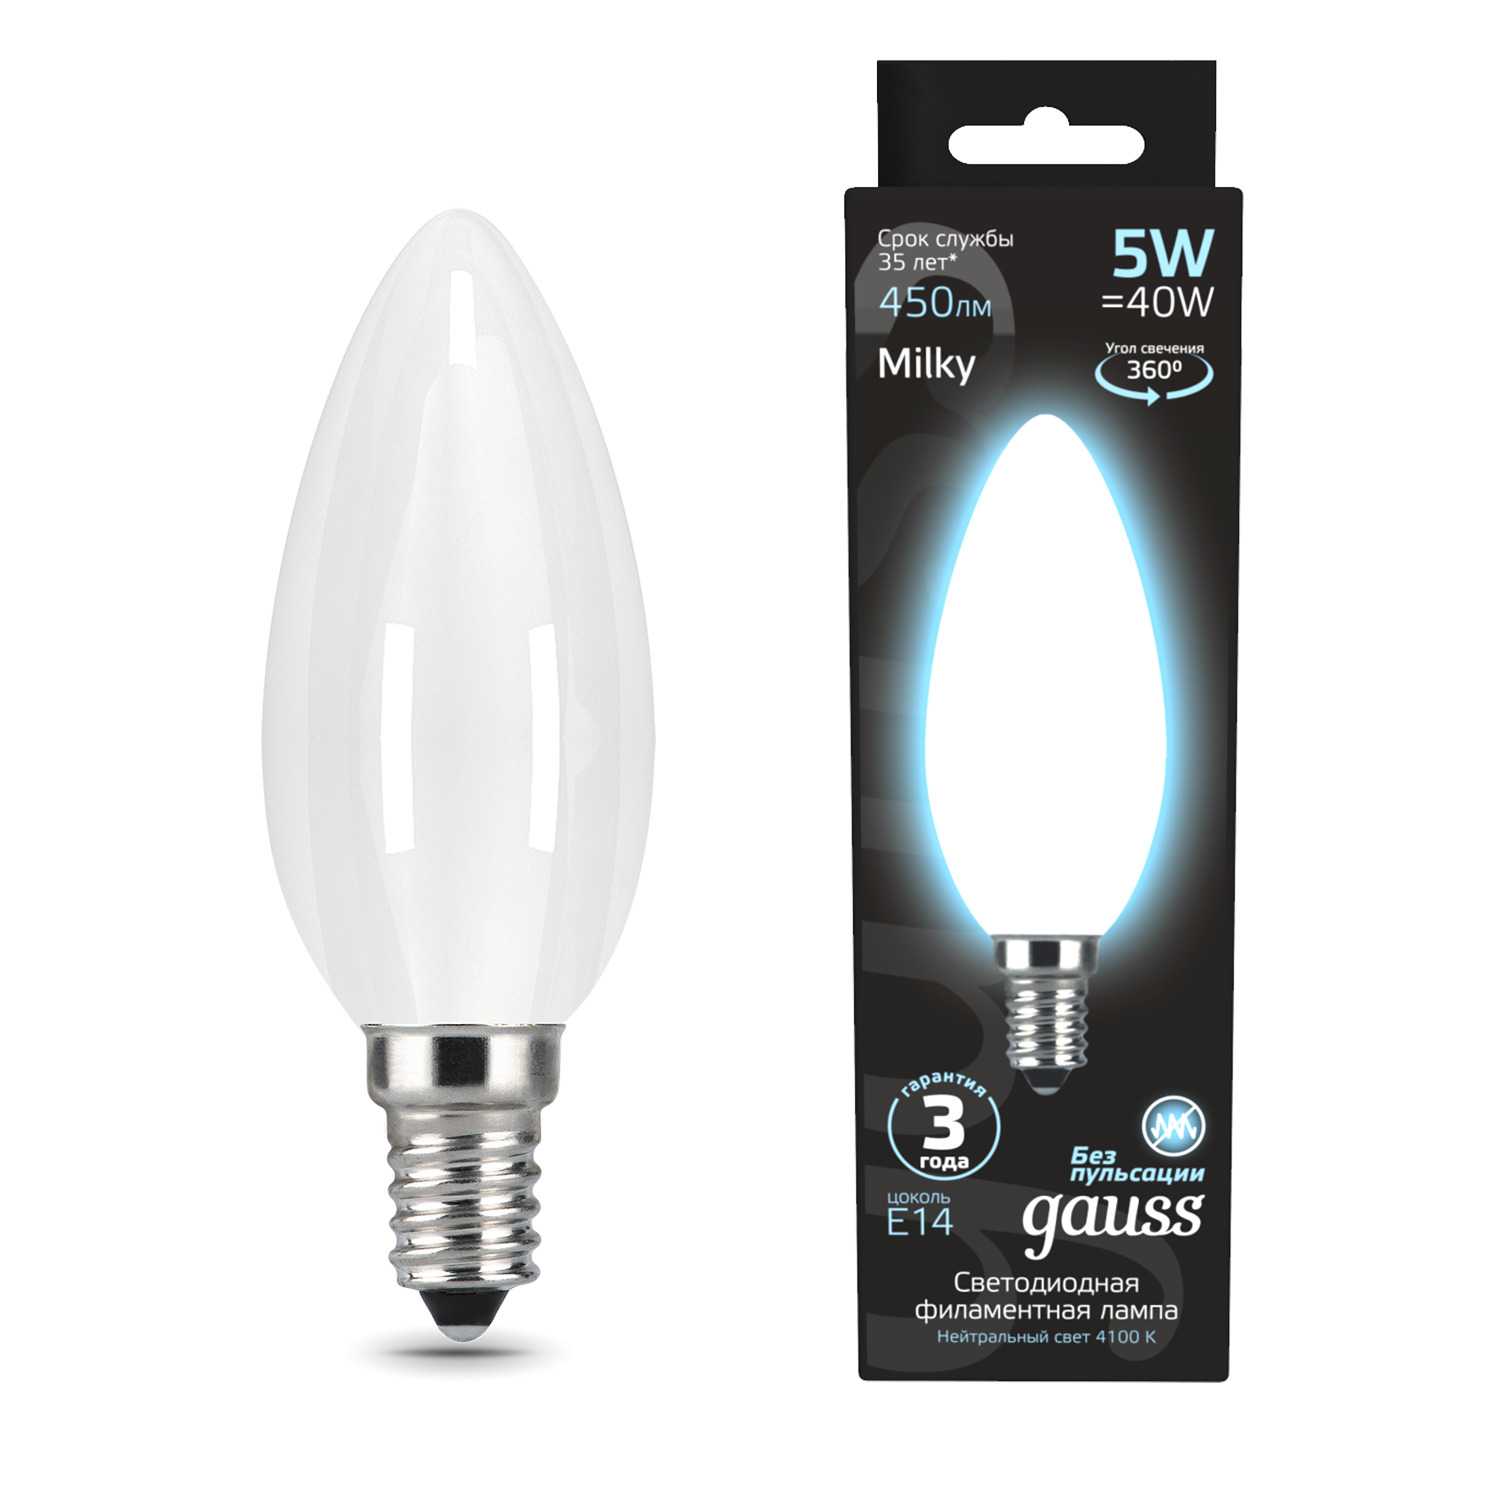 Упаковка ламп 10 штук Лампа Gauss Filament Свеча 5W 450lm 4100К Е14 milky LED купить в интернет-магазине, цены на Мегамаркет